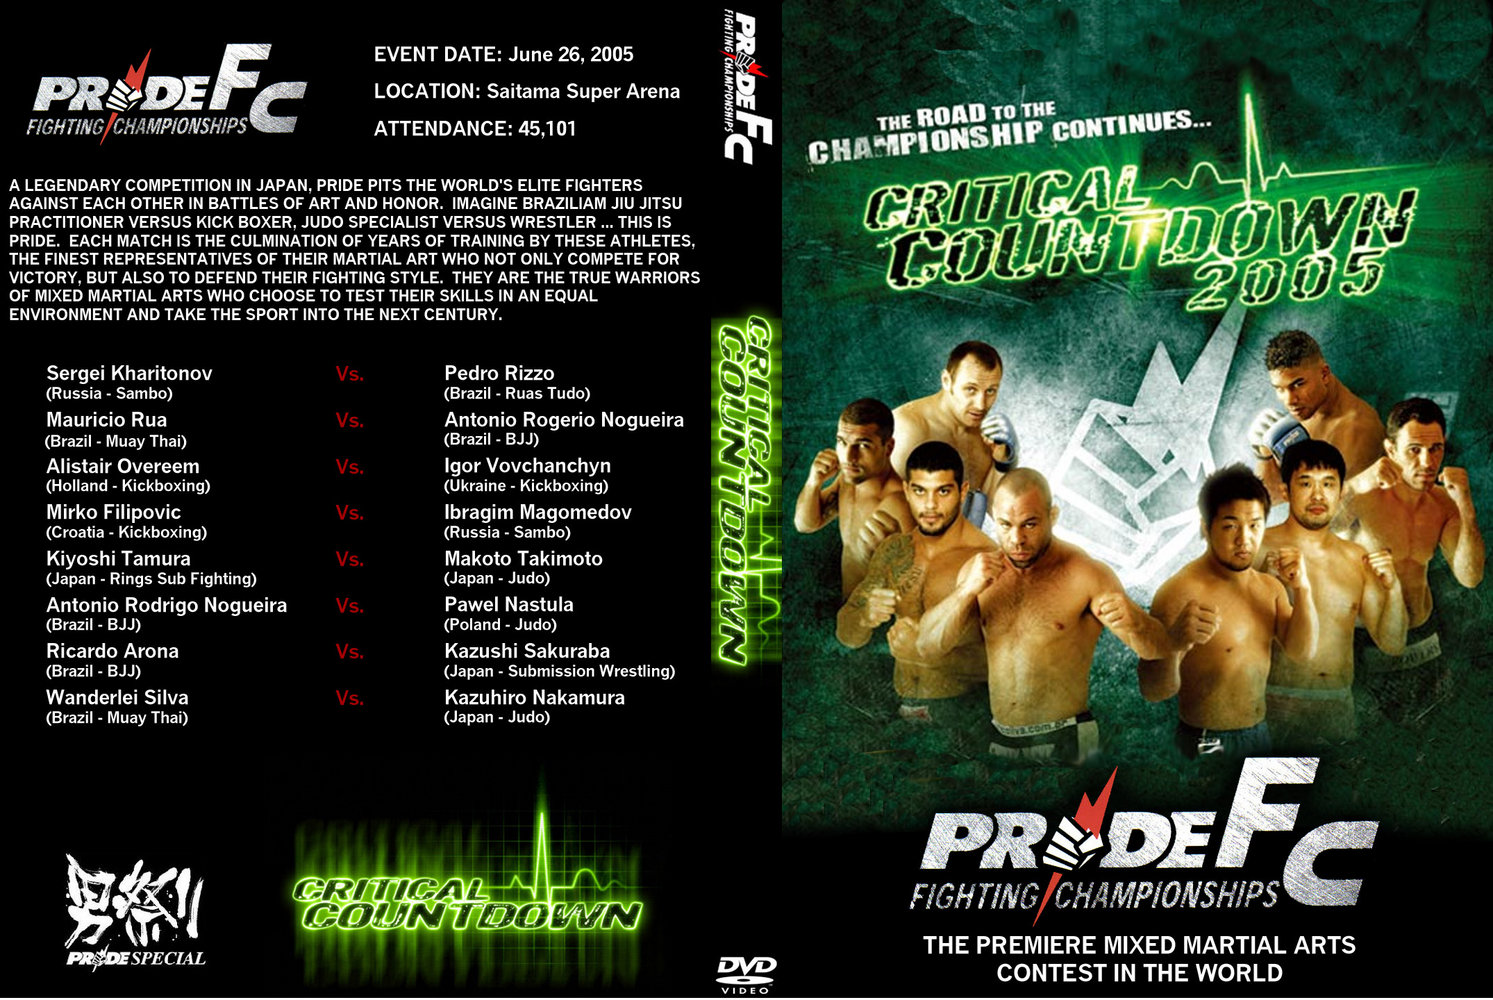 Jaquette DVD Pride Fc Critical Countdown 2005